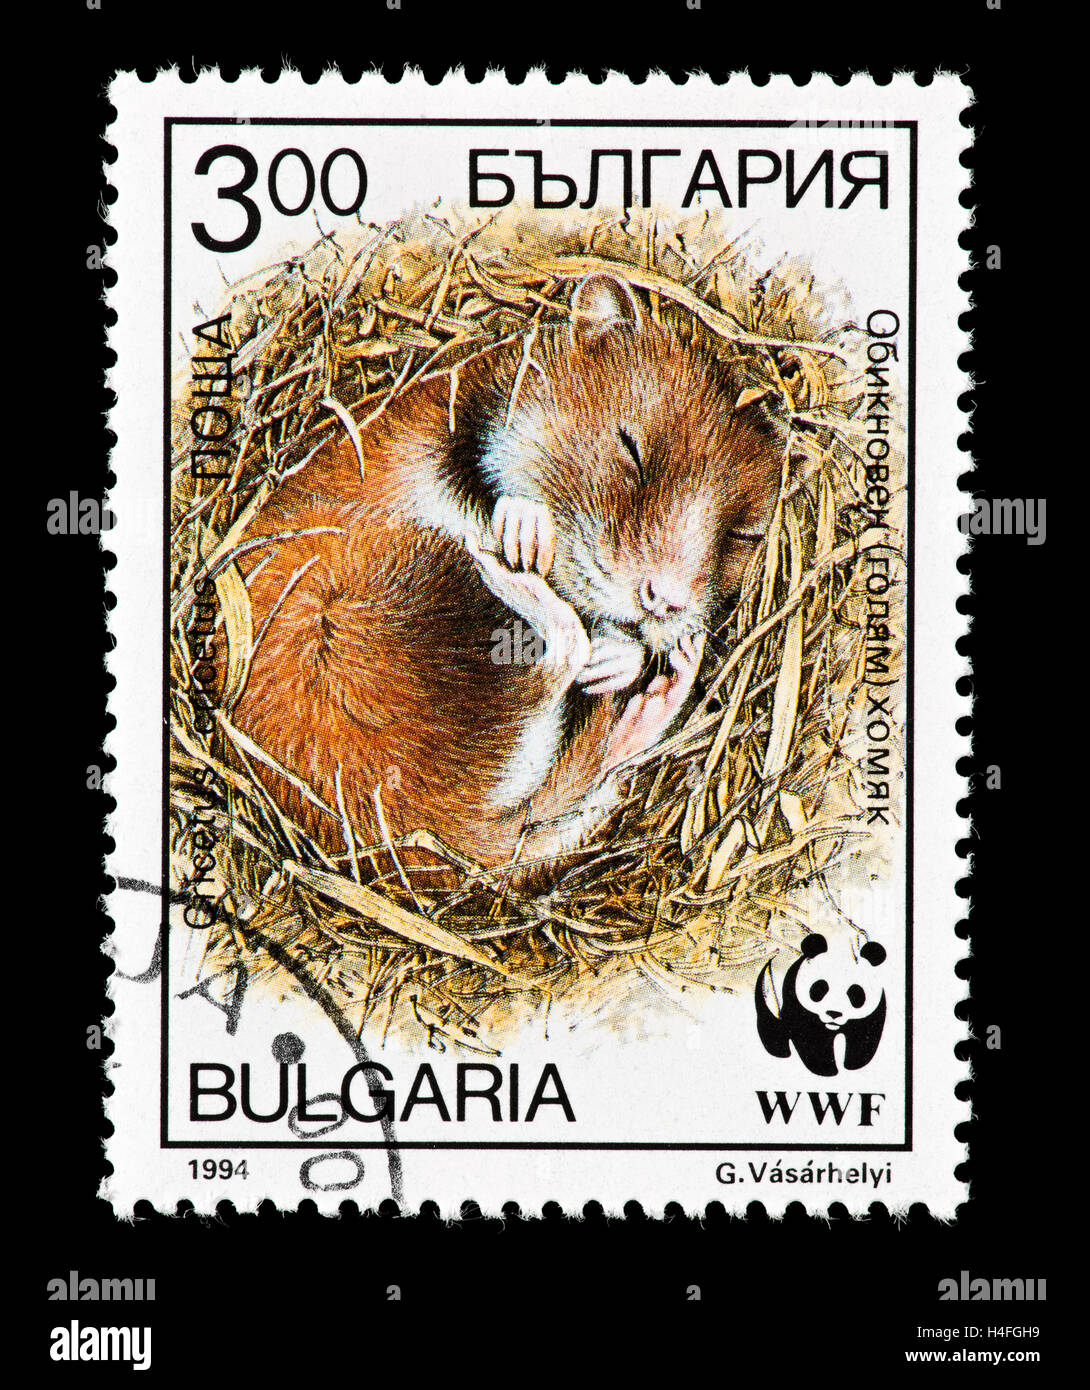 Timbre-poste de la Bulgarie représentant un grand hamster (Cricetus cricetus) dormir dans le nid. Banque D'Images